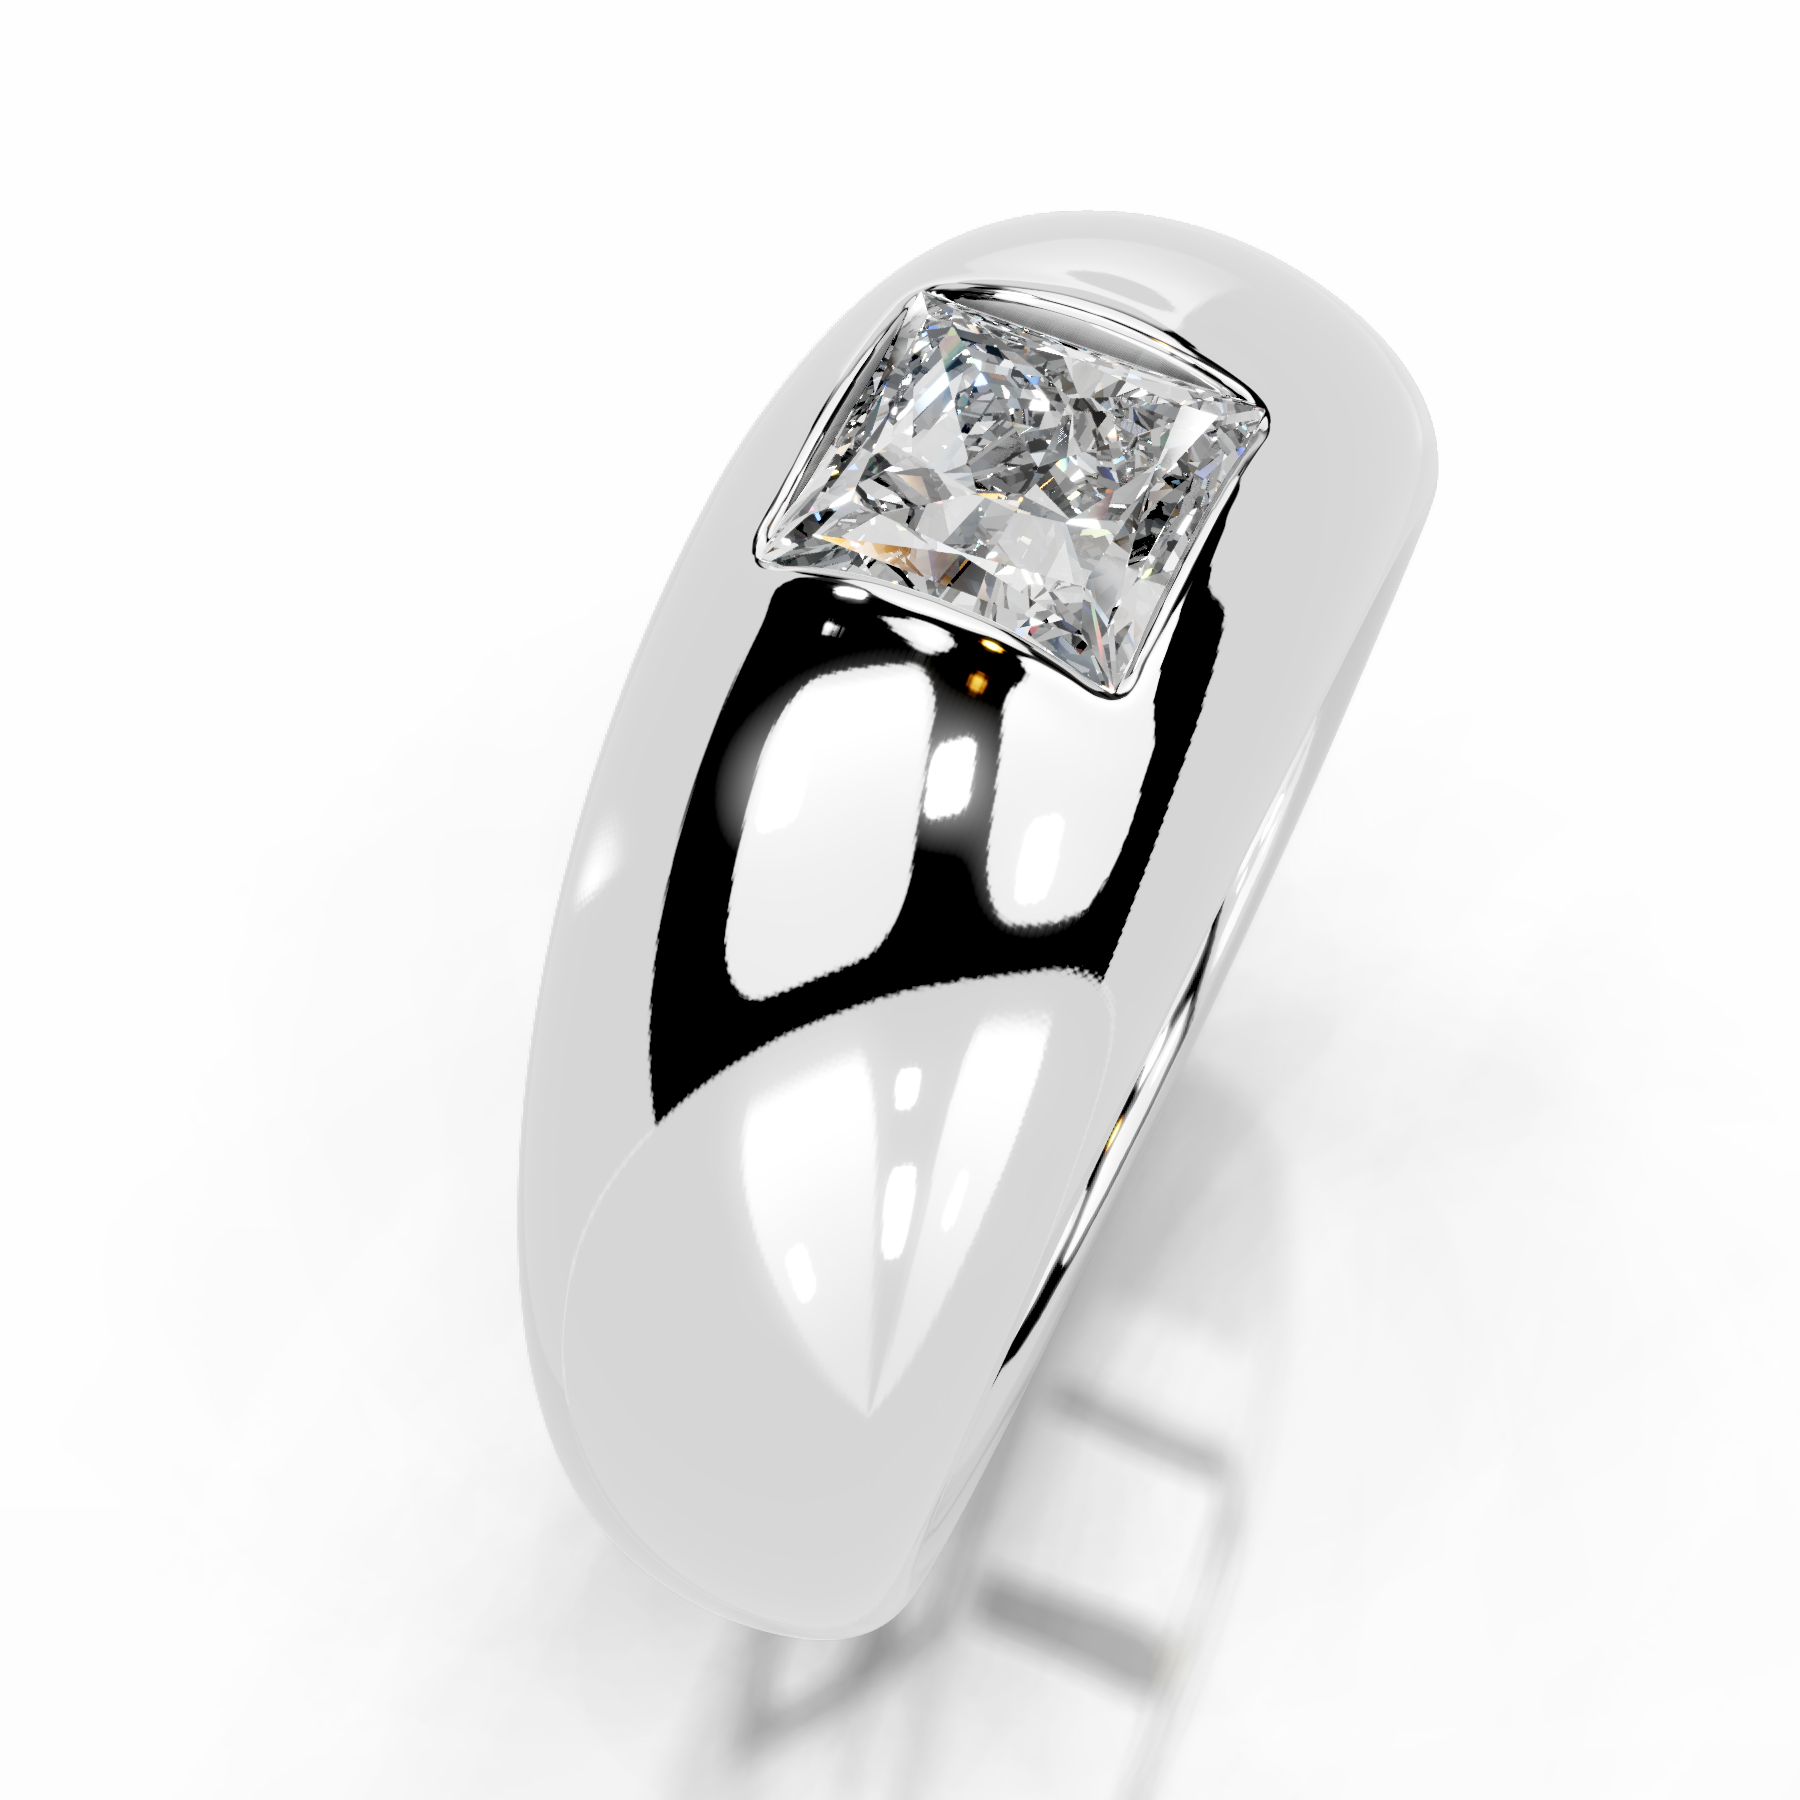 Aaliyah Diamond Engagement Ring   (1 Carat) -14K White Gold